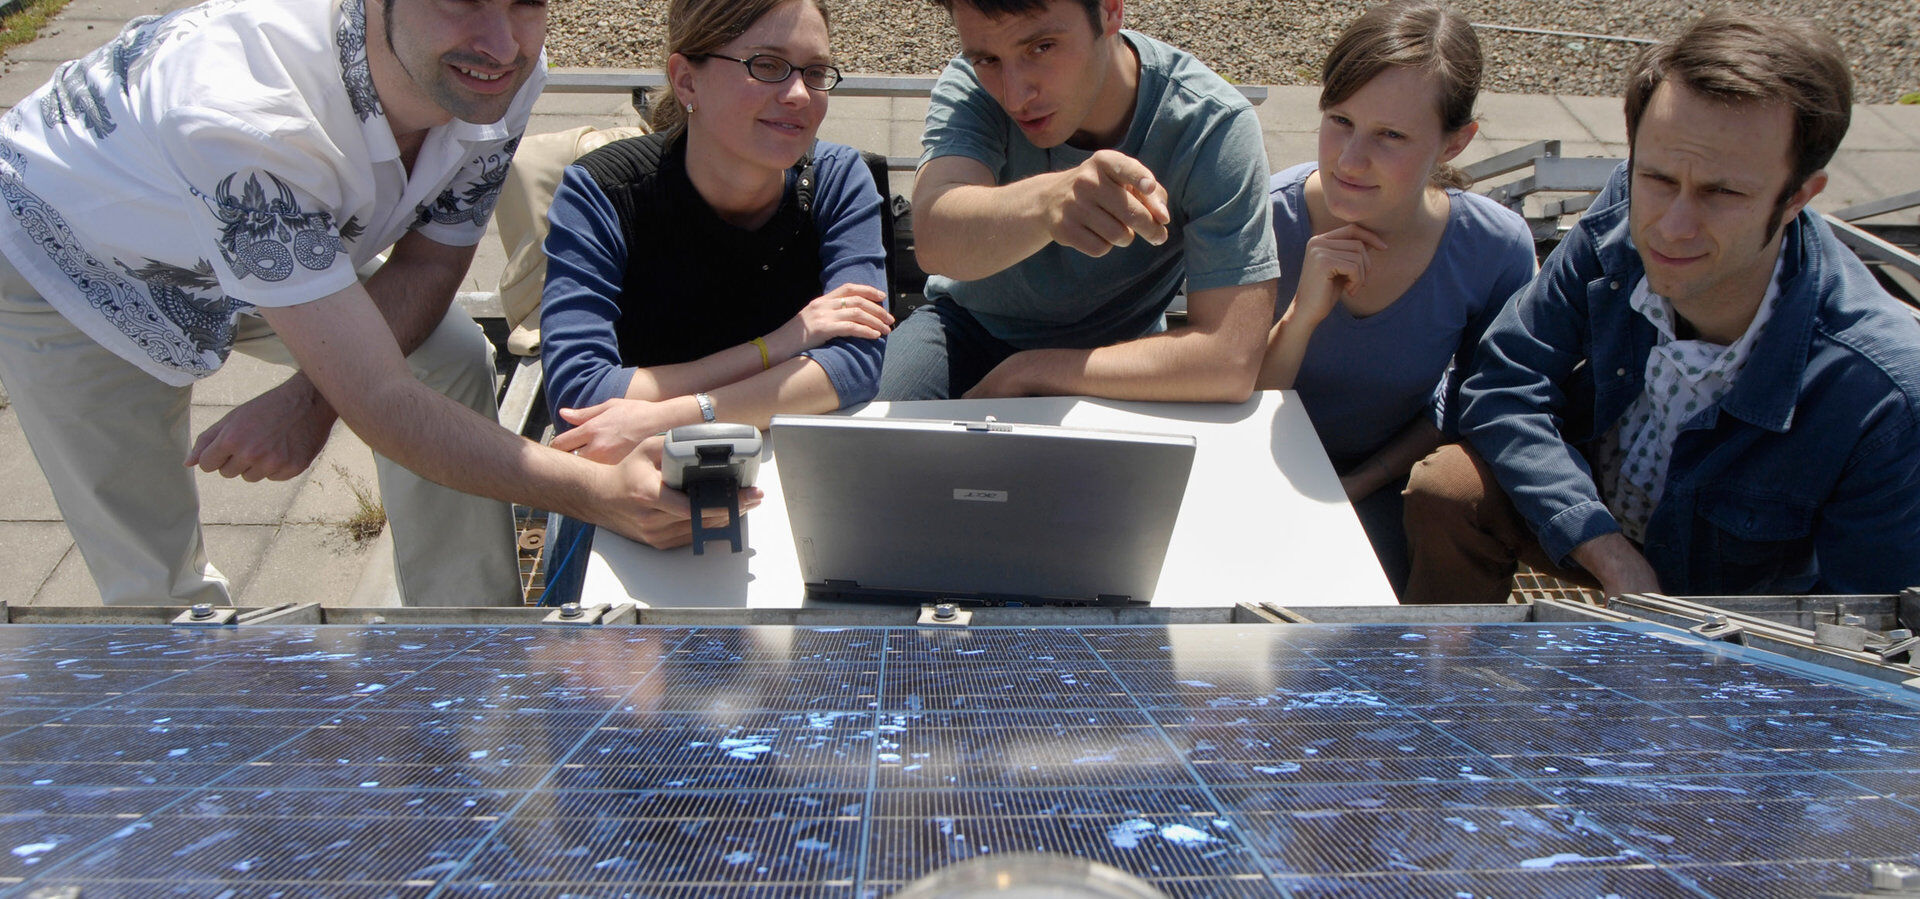 Auf dem Dach des Elektrotechnikneubau der Technischen Universität Berlin. Ein Wissenschaftler erläutert Besuchern wie die Unterschiede zwischen verschiedenen Solarmodulen ermittelt werden, sie blicken auf ein Panel und Messgeräte